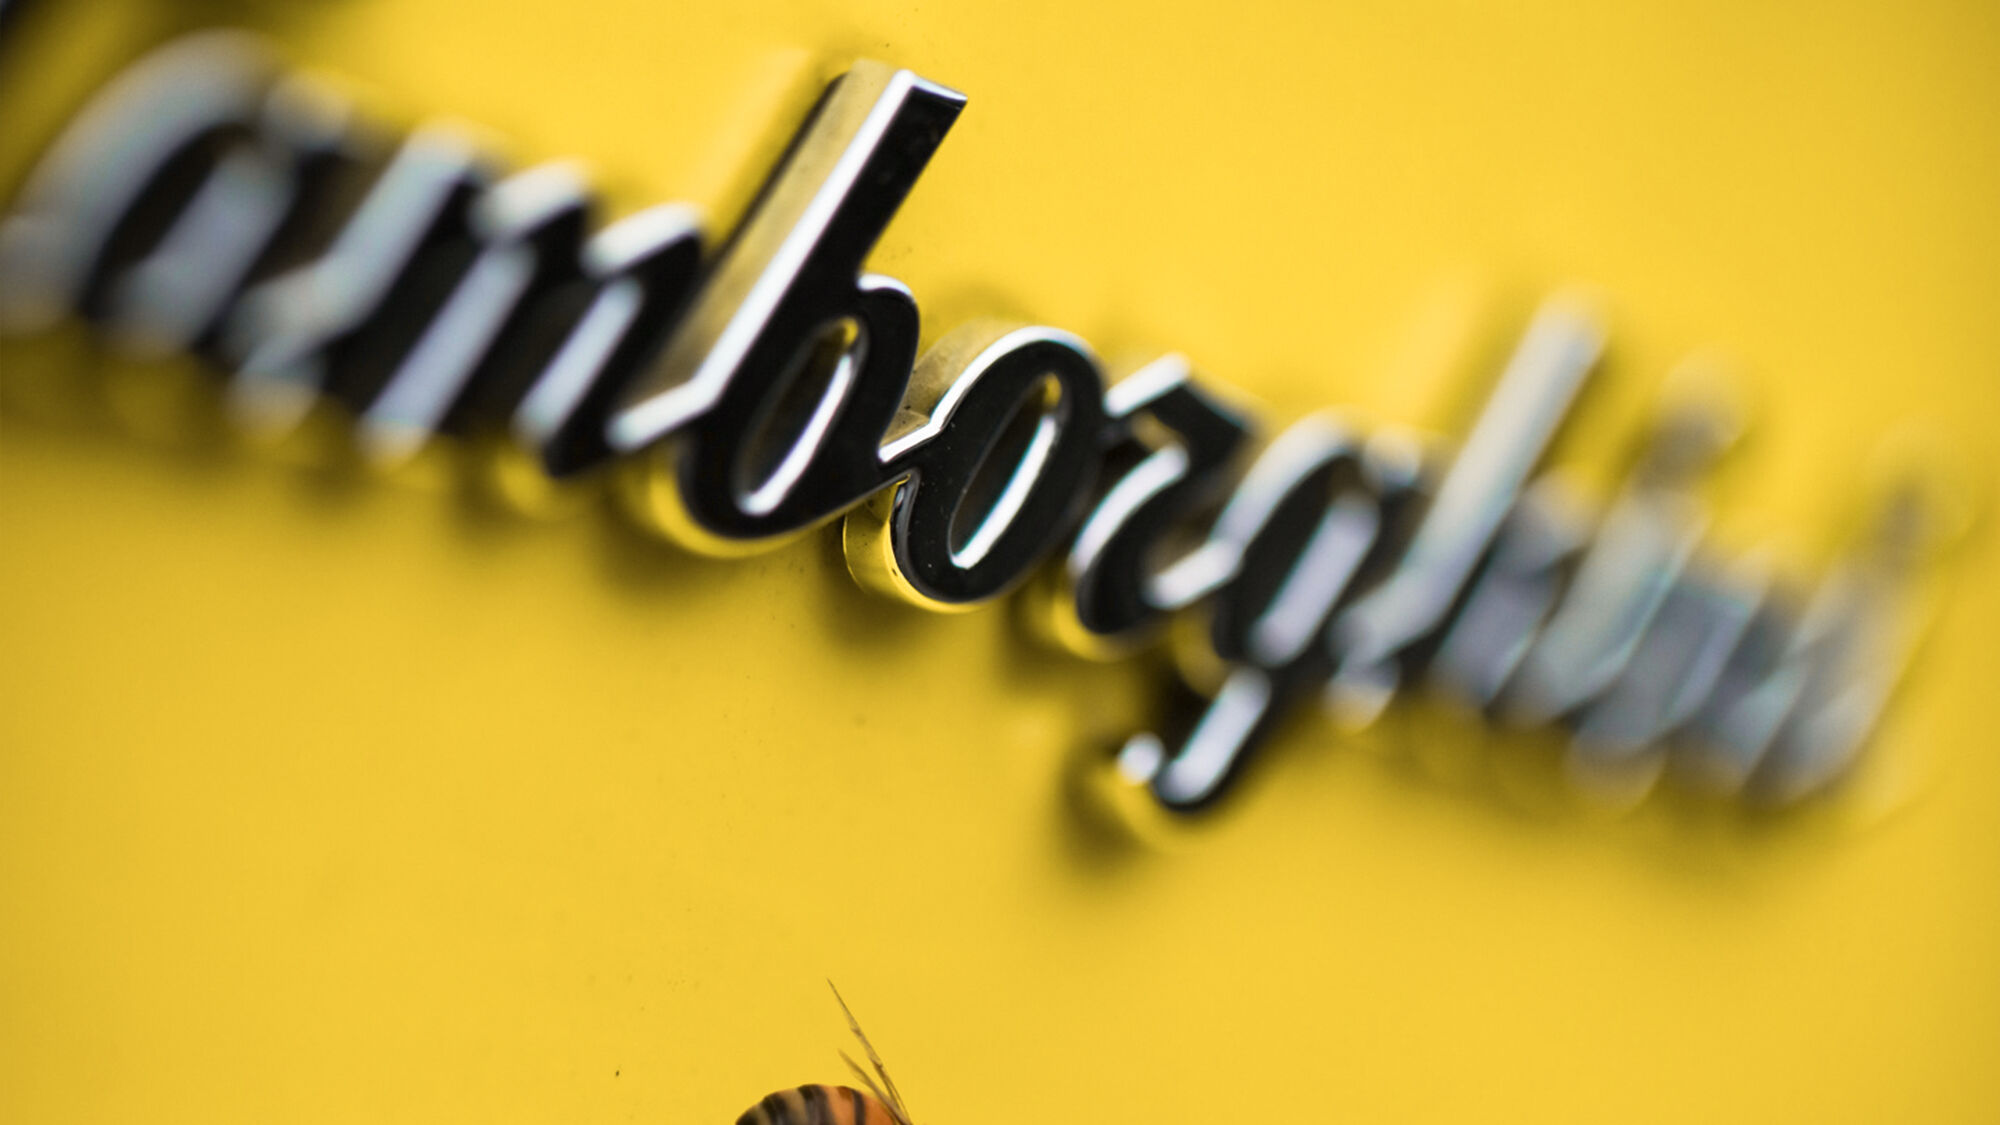 Un’ape accanto alla scritta stilizzata tipica delle supercar made-by-Lamborghini